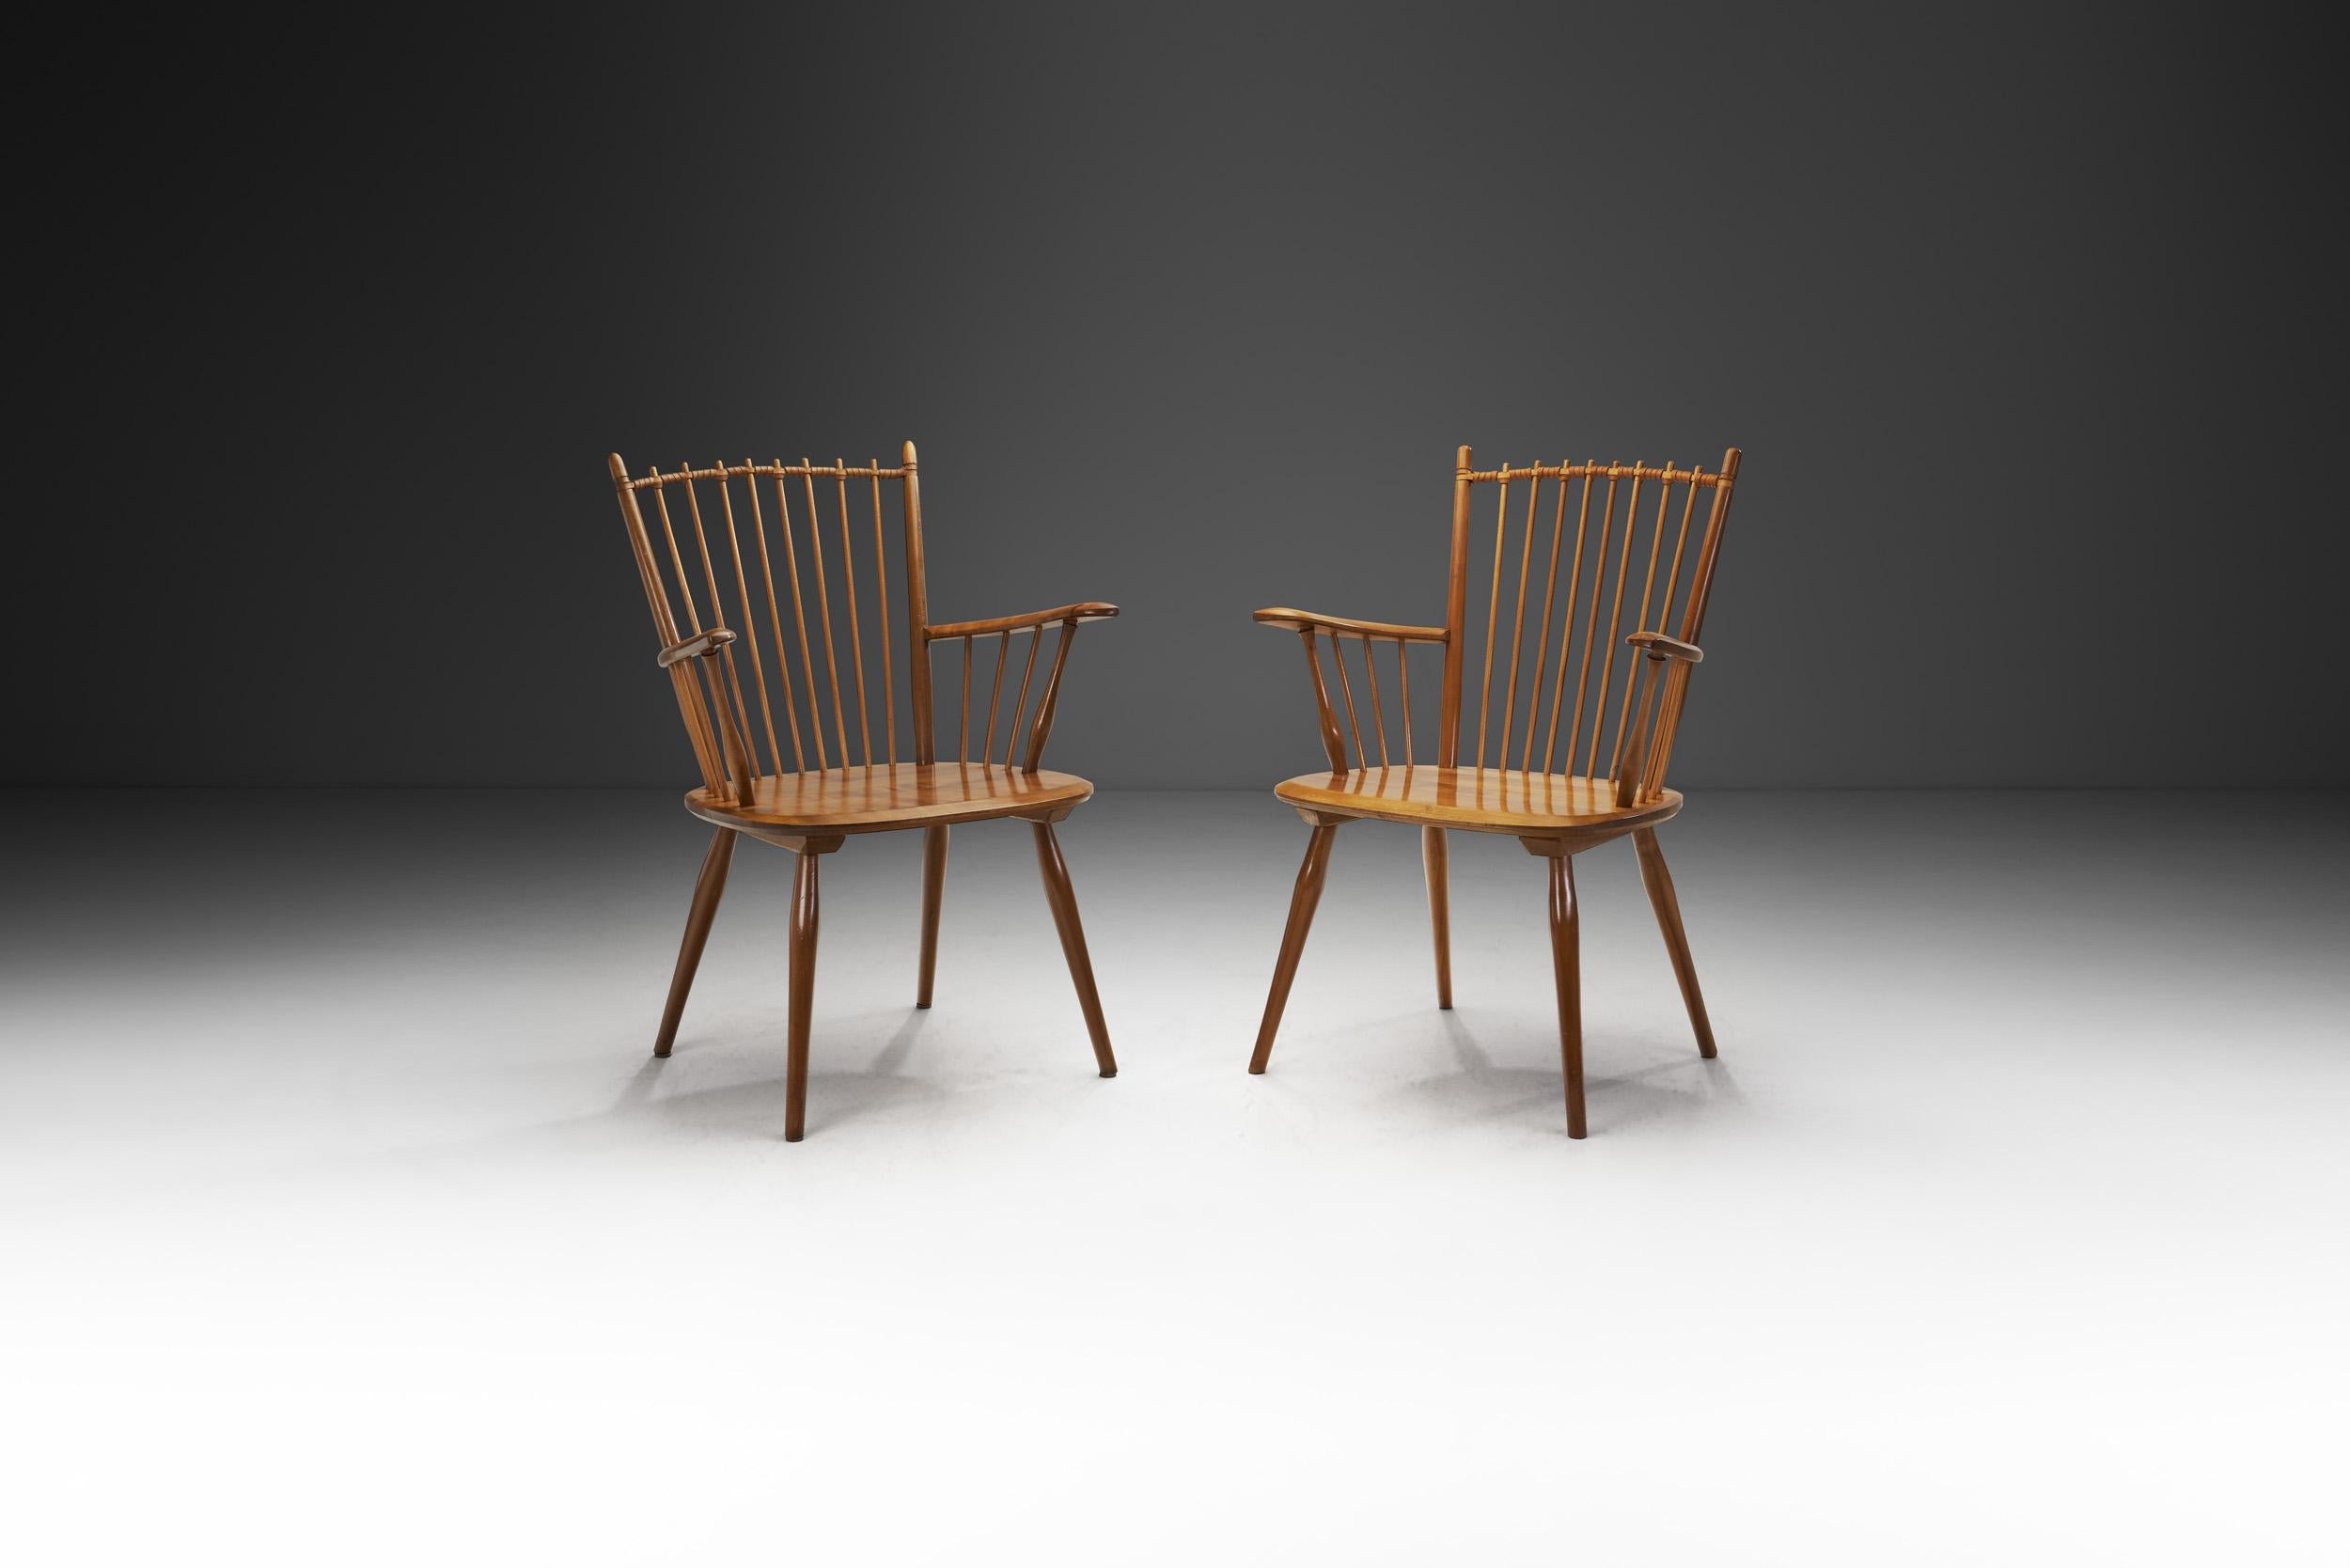 Cette paire de chaises Arts and Crafts est une version du modèle peut-être le plus connu du designer allemand Albert Haberer. Les dossiers et les accoudoirs en fuseau font de ce modèle une pièce immédiatement reconnaissable de l'histoire du design